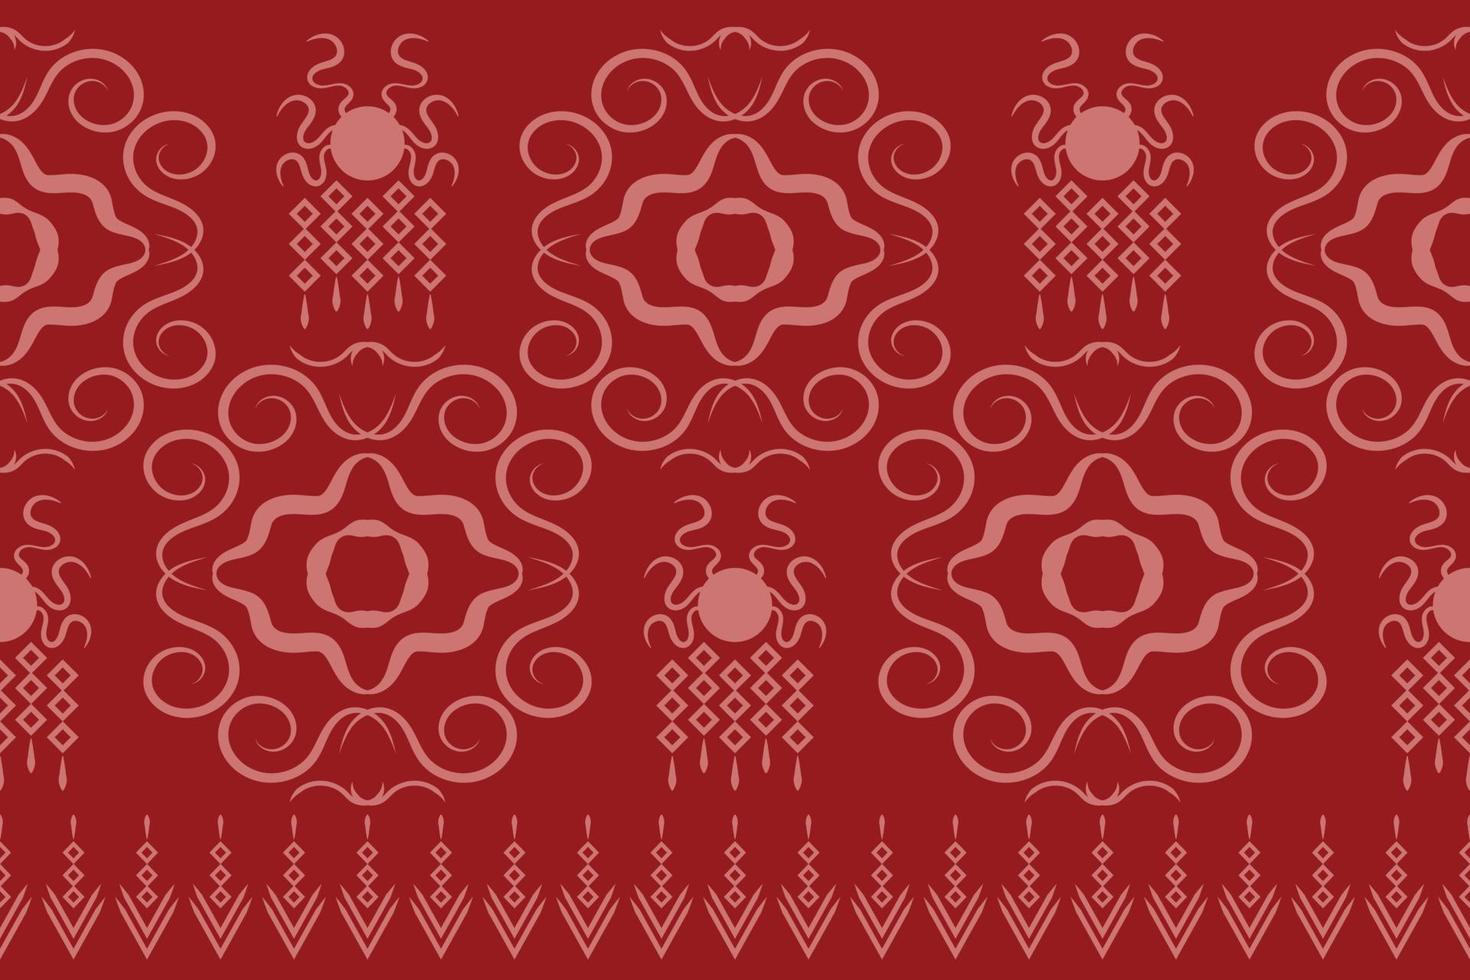 etnisch kleding stof patroon meetkundig stijl. sarong aztec etnisch oosters patroon traditioneel karmozijn rood achtergrond. abstract,vector,illustratie. gebruik voor textuur,kleding,verpakking,decoratie,tapijt. vector